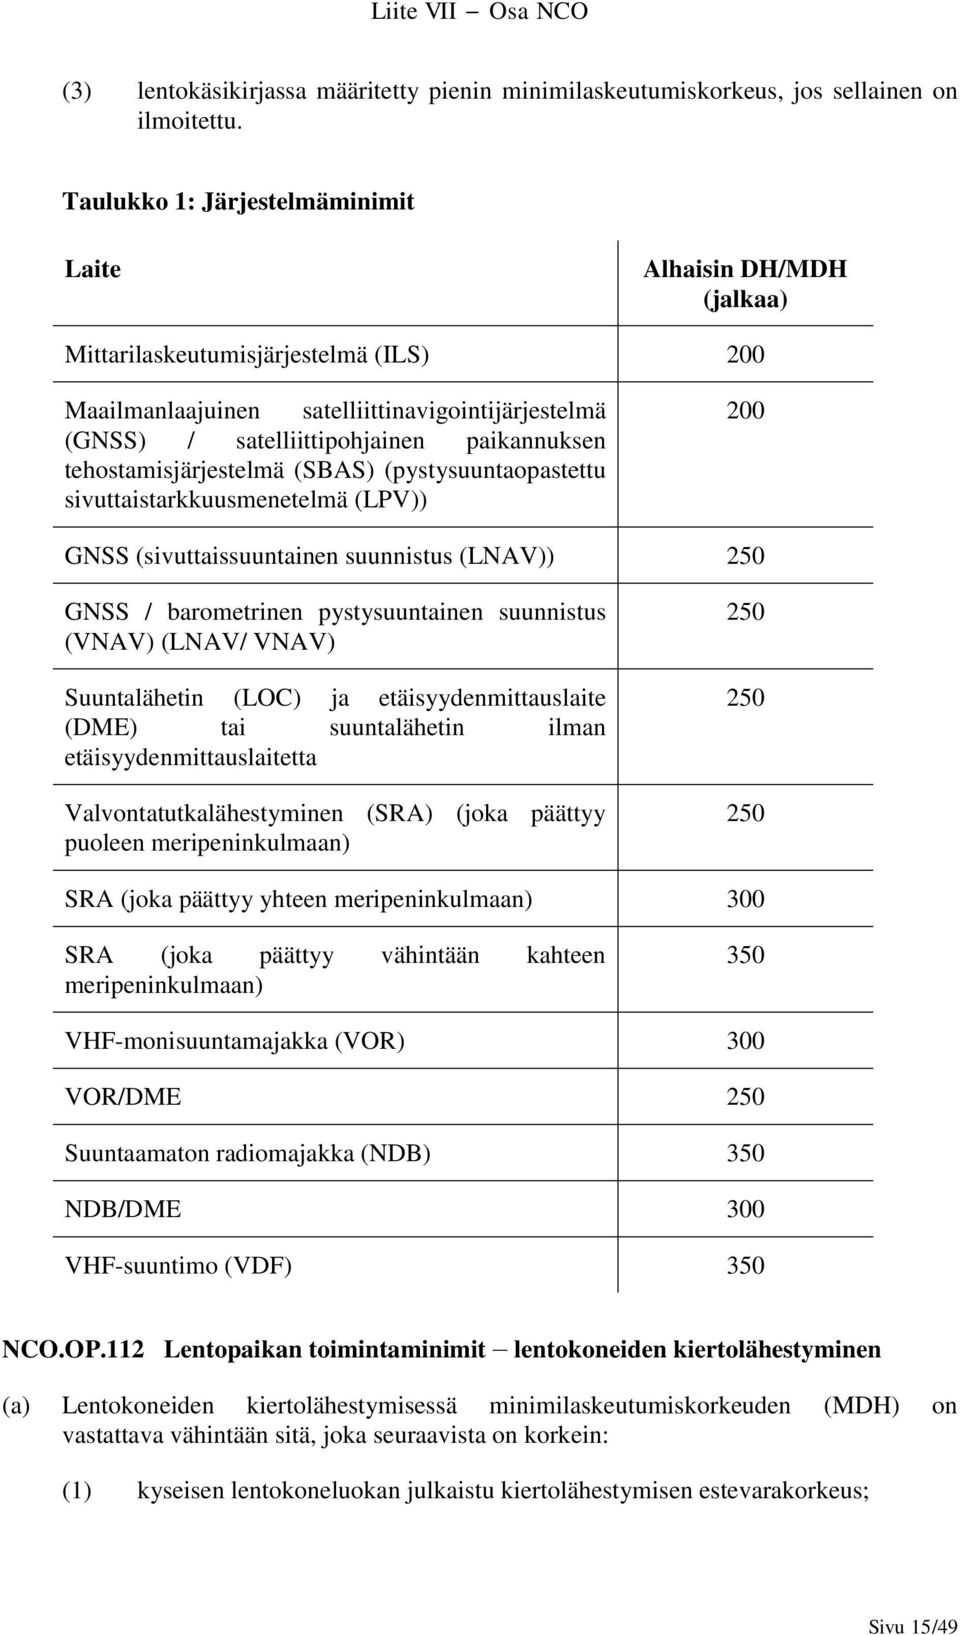 tehostamisjärjestelmä (SBAS) (pystysuuntaopastettu sivuttaistarkkuusmenetelmä (LPV)) 200 GNSS (sivuttaissuuntainen suunnistus (LNAV)) 250 GNSS / barometrinen pystysuuntainen suunnistus (VNAV) (LNAV/